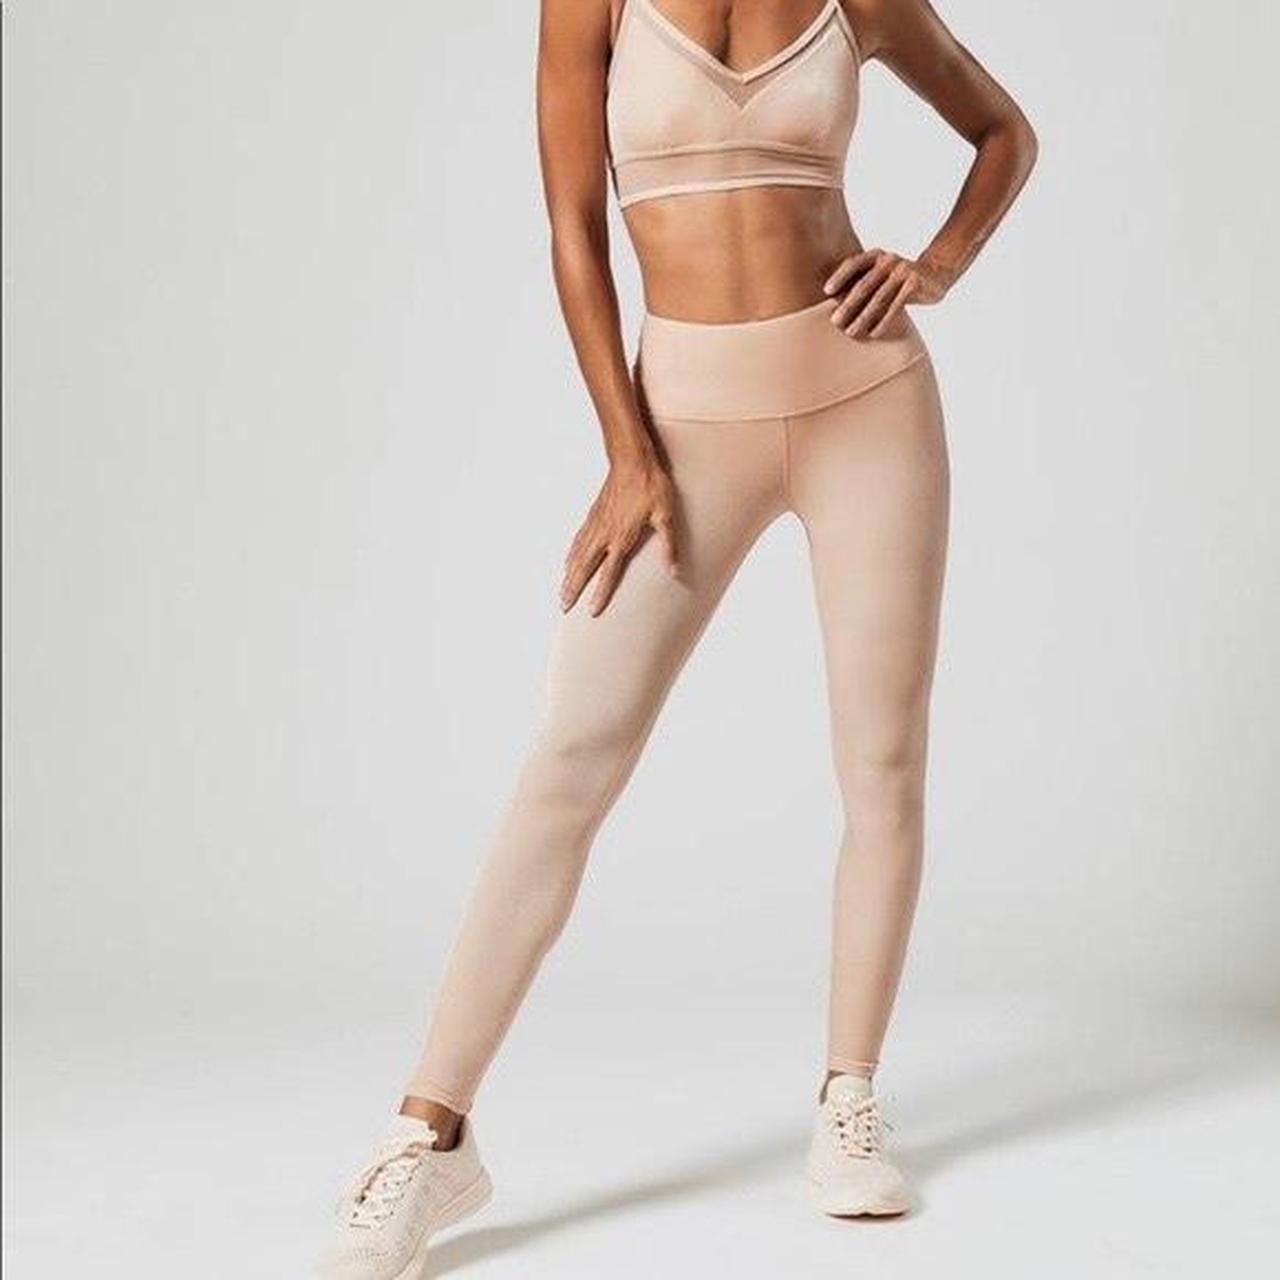 Alo Yoga Velvet Posh Legging Brand new with tags, - Depop